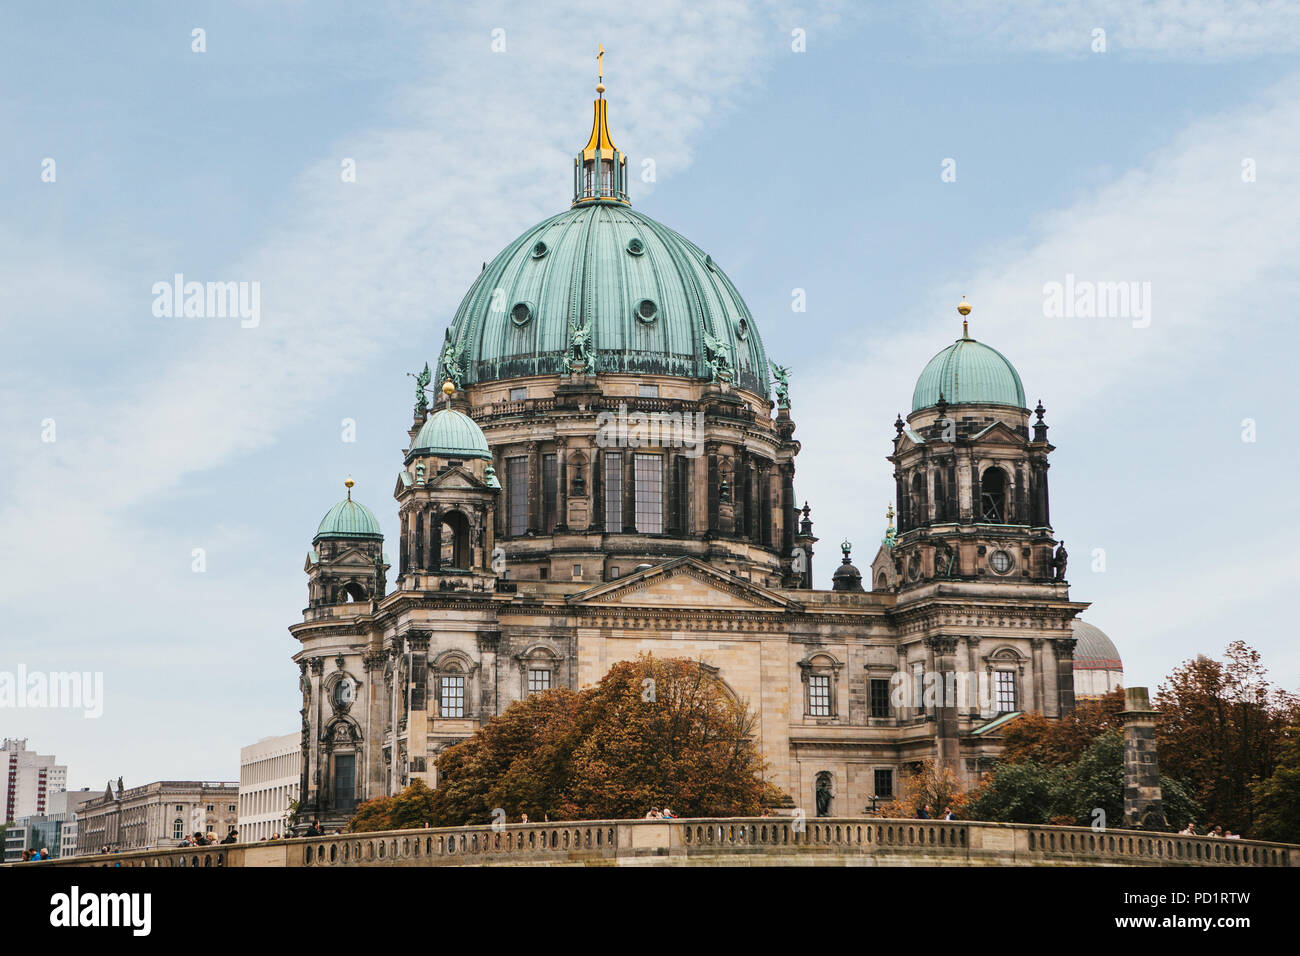 La Cattedrale di Berlino è chiamato Berliner Dom contro il cielo blu. È un bellissimo edificio antico in stile neoclassico e barocco con croce e sculture. Berlino, Germania Foto Stock